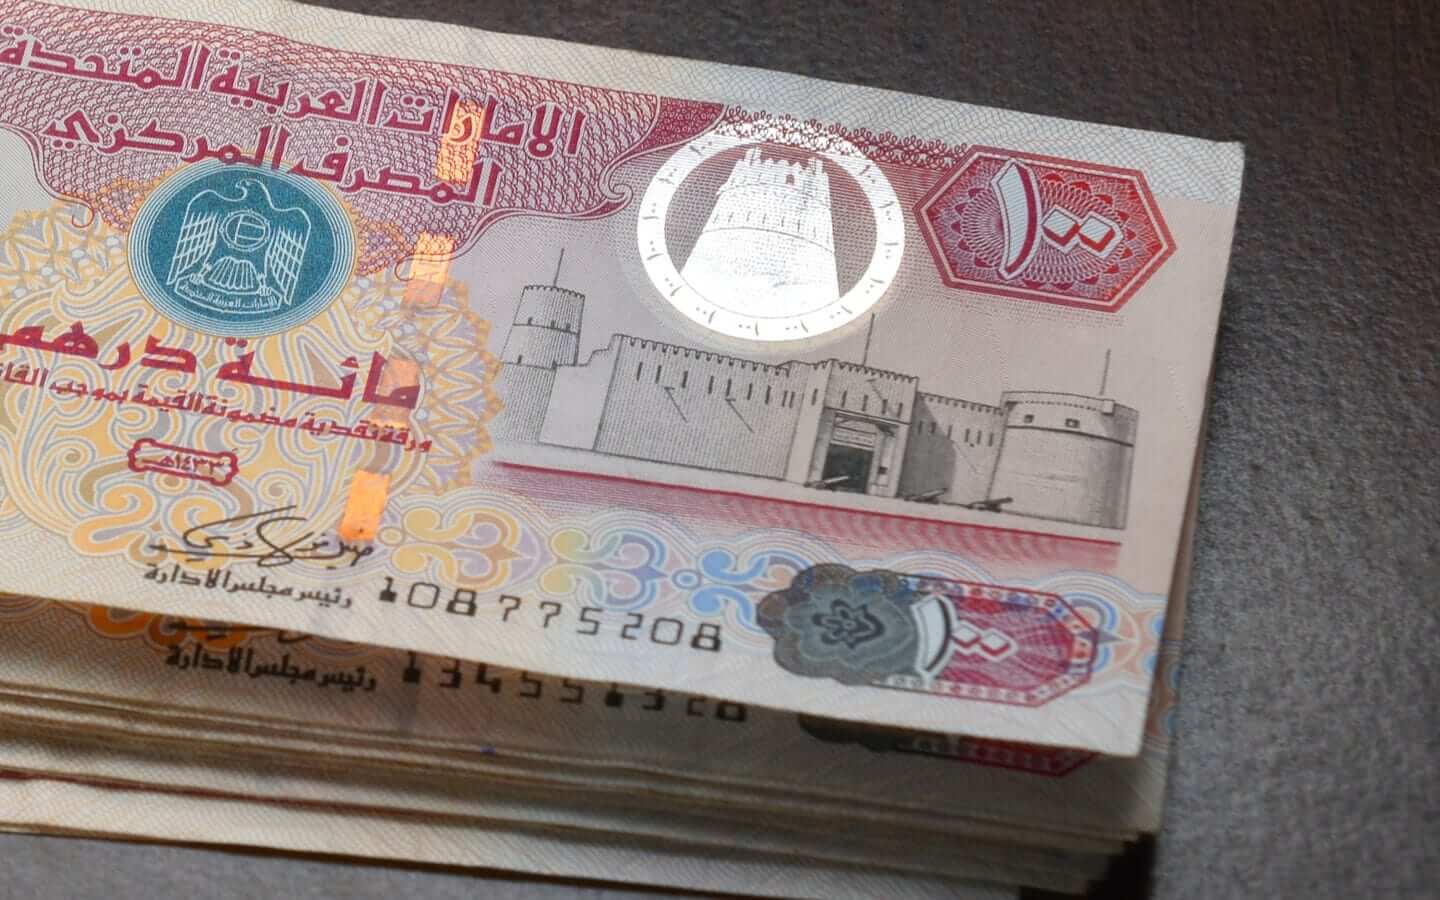 nuevo impuesto en emiratos vivirendubai